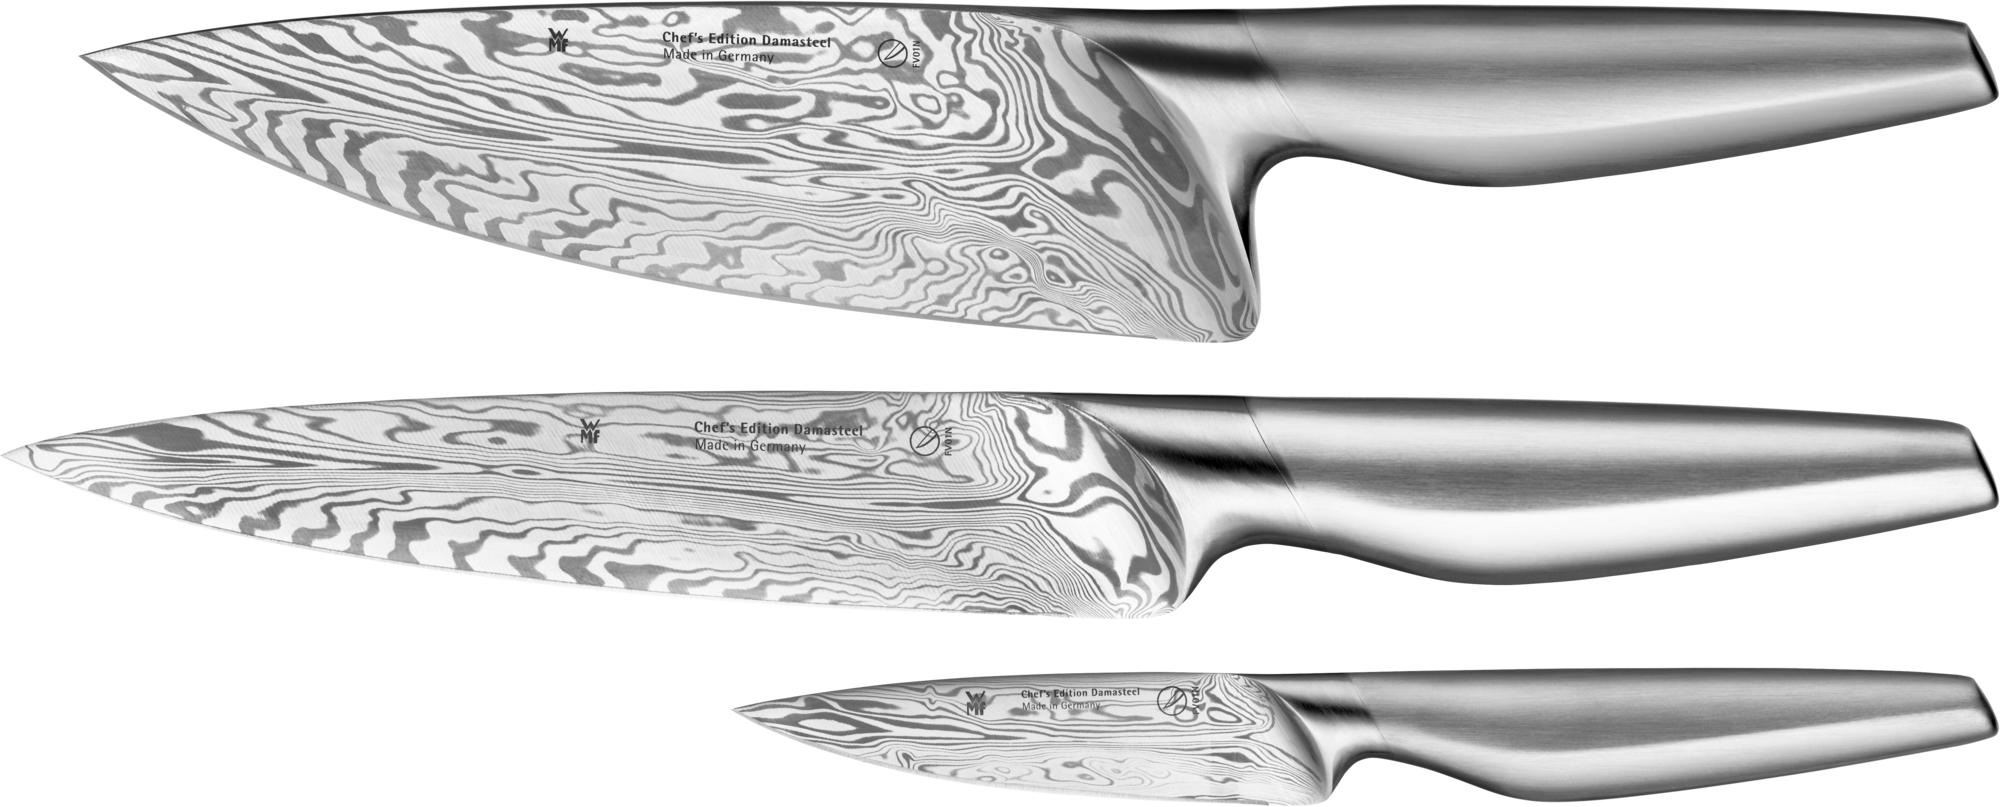 Chef`s Edition Damasteel, 3-pcs knife set